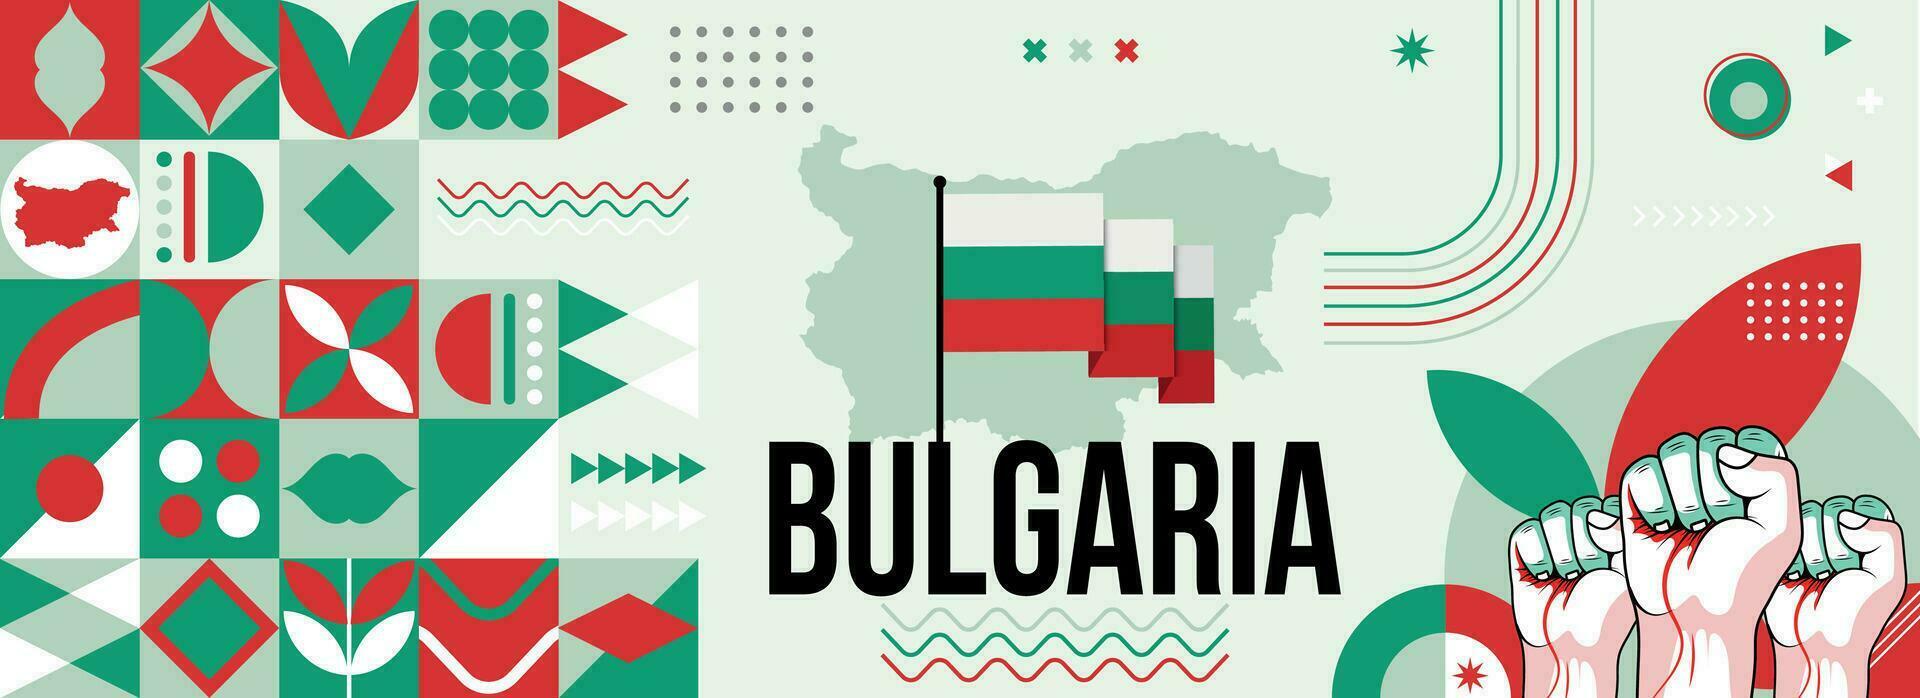 Bulgarien National oder Unabhängigkeit Tag Banner zum bulgarisch Feier. Flagge und Karte von Bulgarien mit angehoben Fäuste. modern retro Design mit Typorgaphie abstrakt geometrisch Symbole. Vektor Illustration.